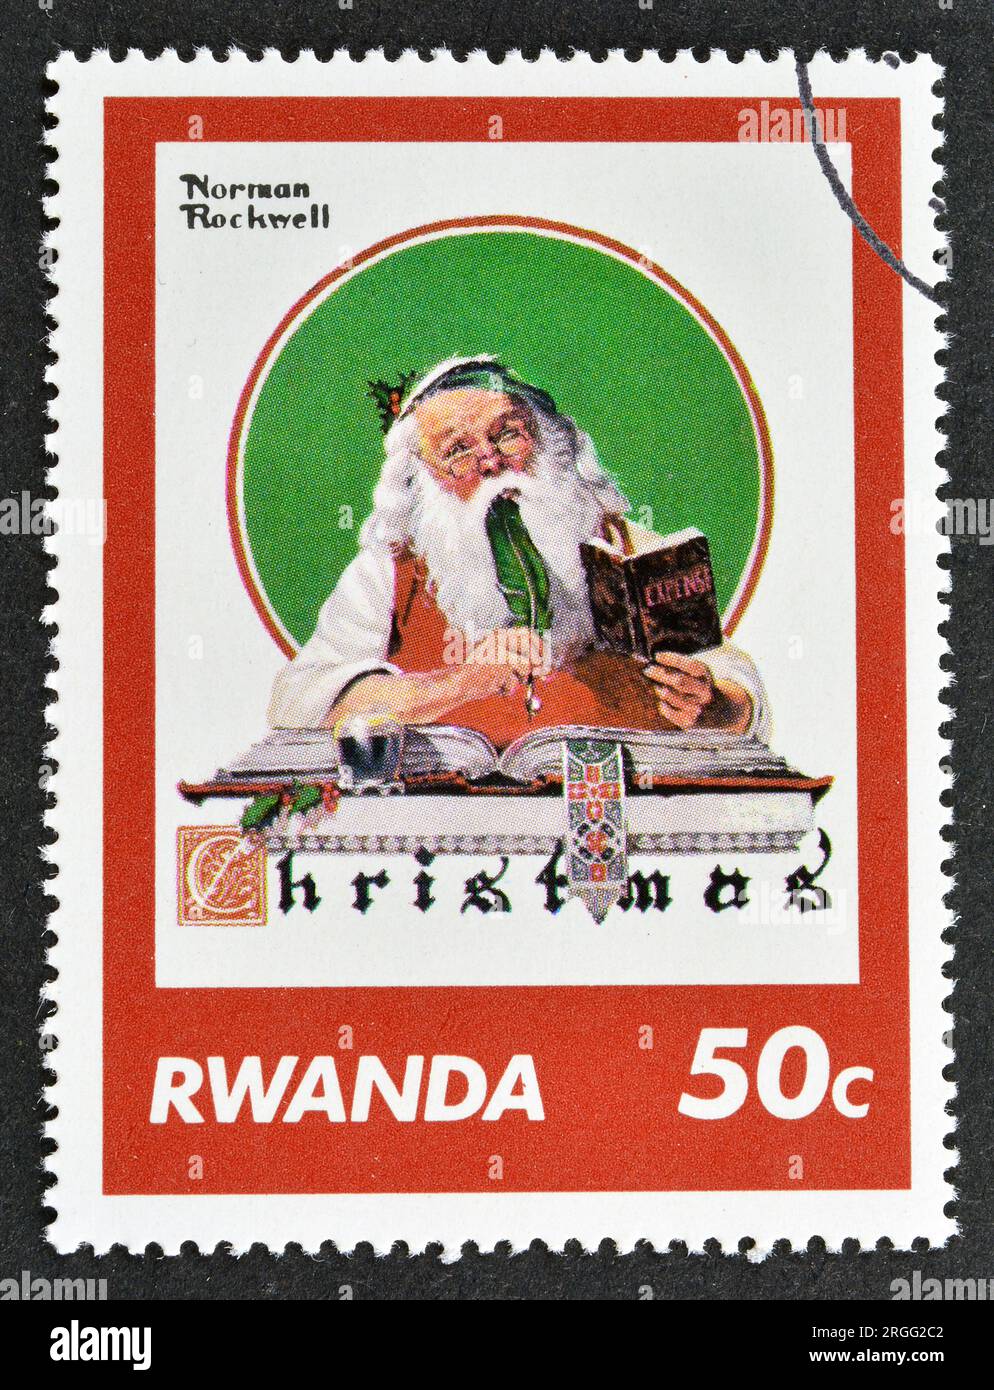 Timbre-poste annulé imprimé par le Rwanda, qui montre une peinture de Norman Rockwell, Noël, vers 1981. Banque D'Images